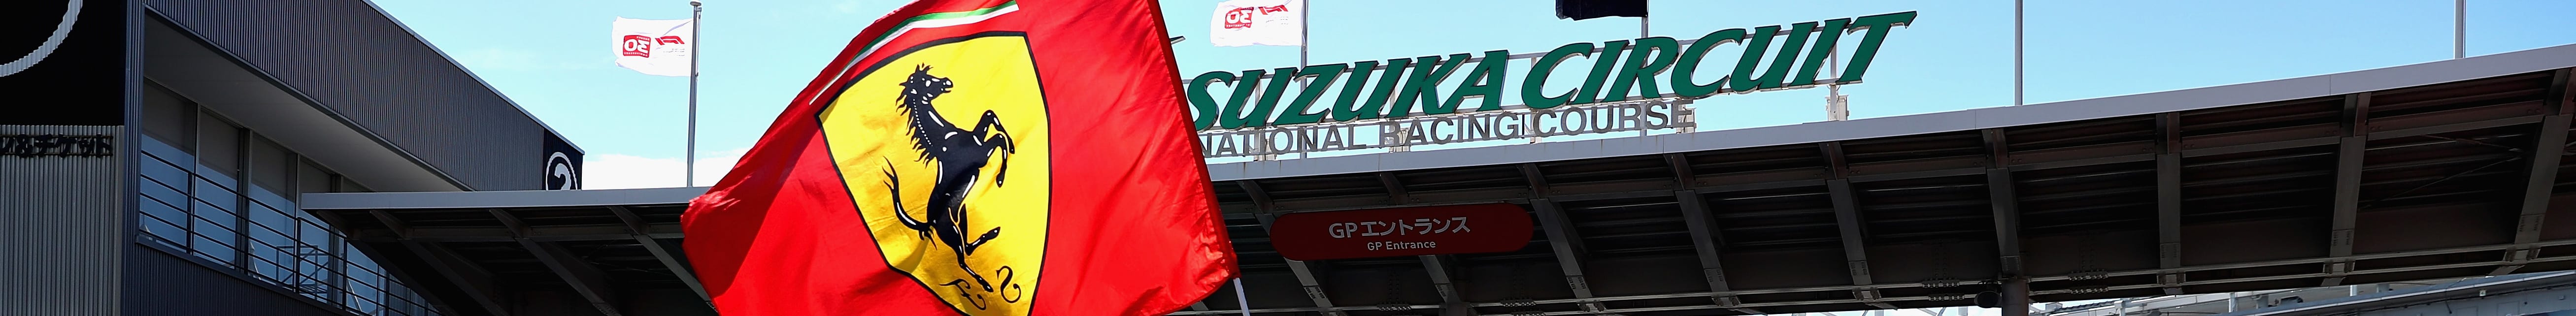 Γκραν Πρι Ιαπωνίας: Θα αντιδράσει η Ferrari;